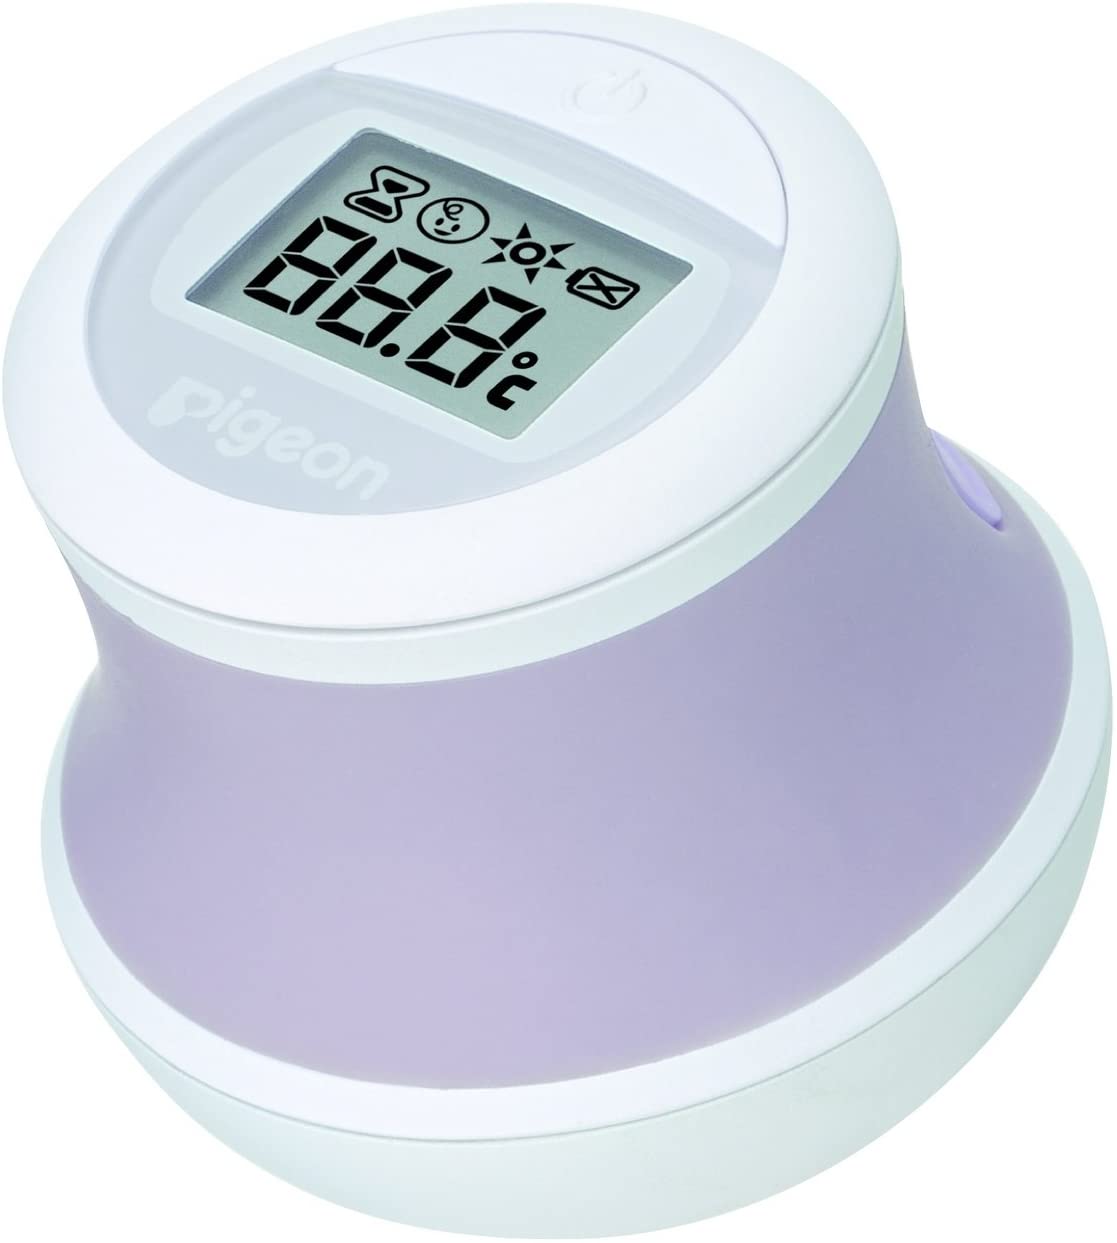 大人用 安心設計 ポイント消化  充実の品 デジタル体温計 かわいい  送料無料  ソフトタイプ 防水 赤ちゃん